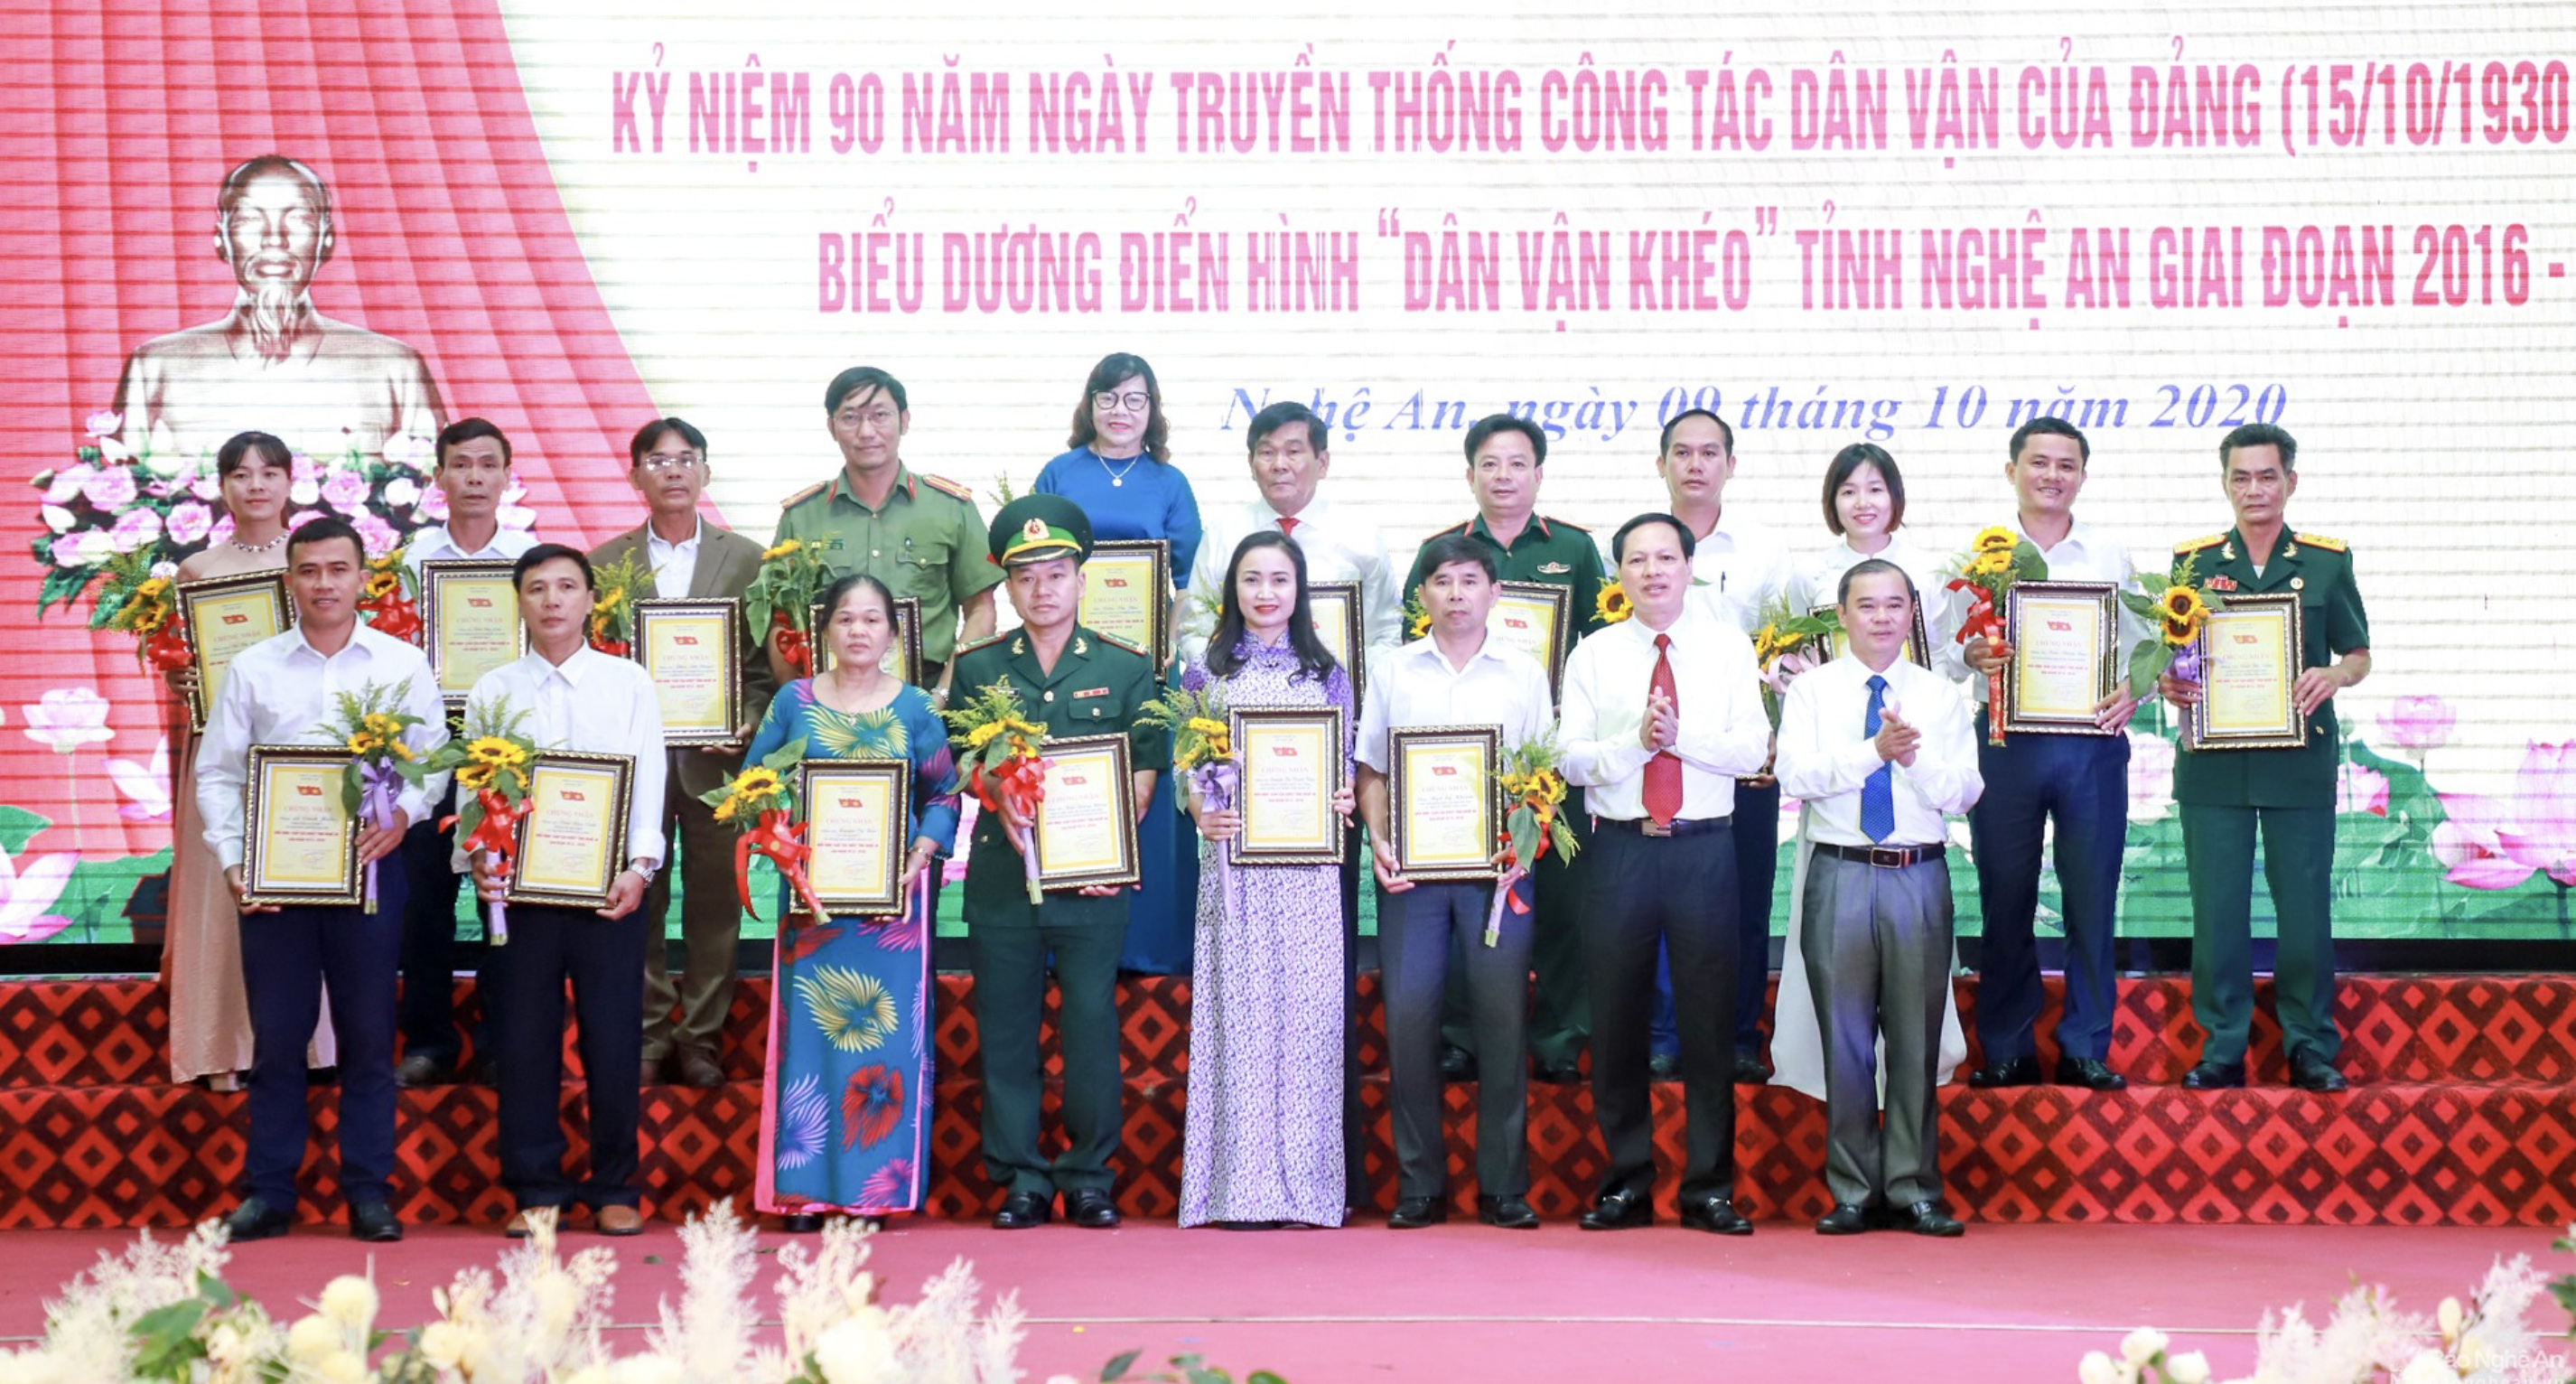 Ông Trần Ngọc Cảnh (hàng trước, thứ hai trái sang) được Tỉnh ủy Nghệ An tuyên dương đã có thành tích xuất sắc trong phong trào thi đua “Dân vận khéo” tỉnh Nghệ An giai đoạn 2016 - 2020.